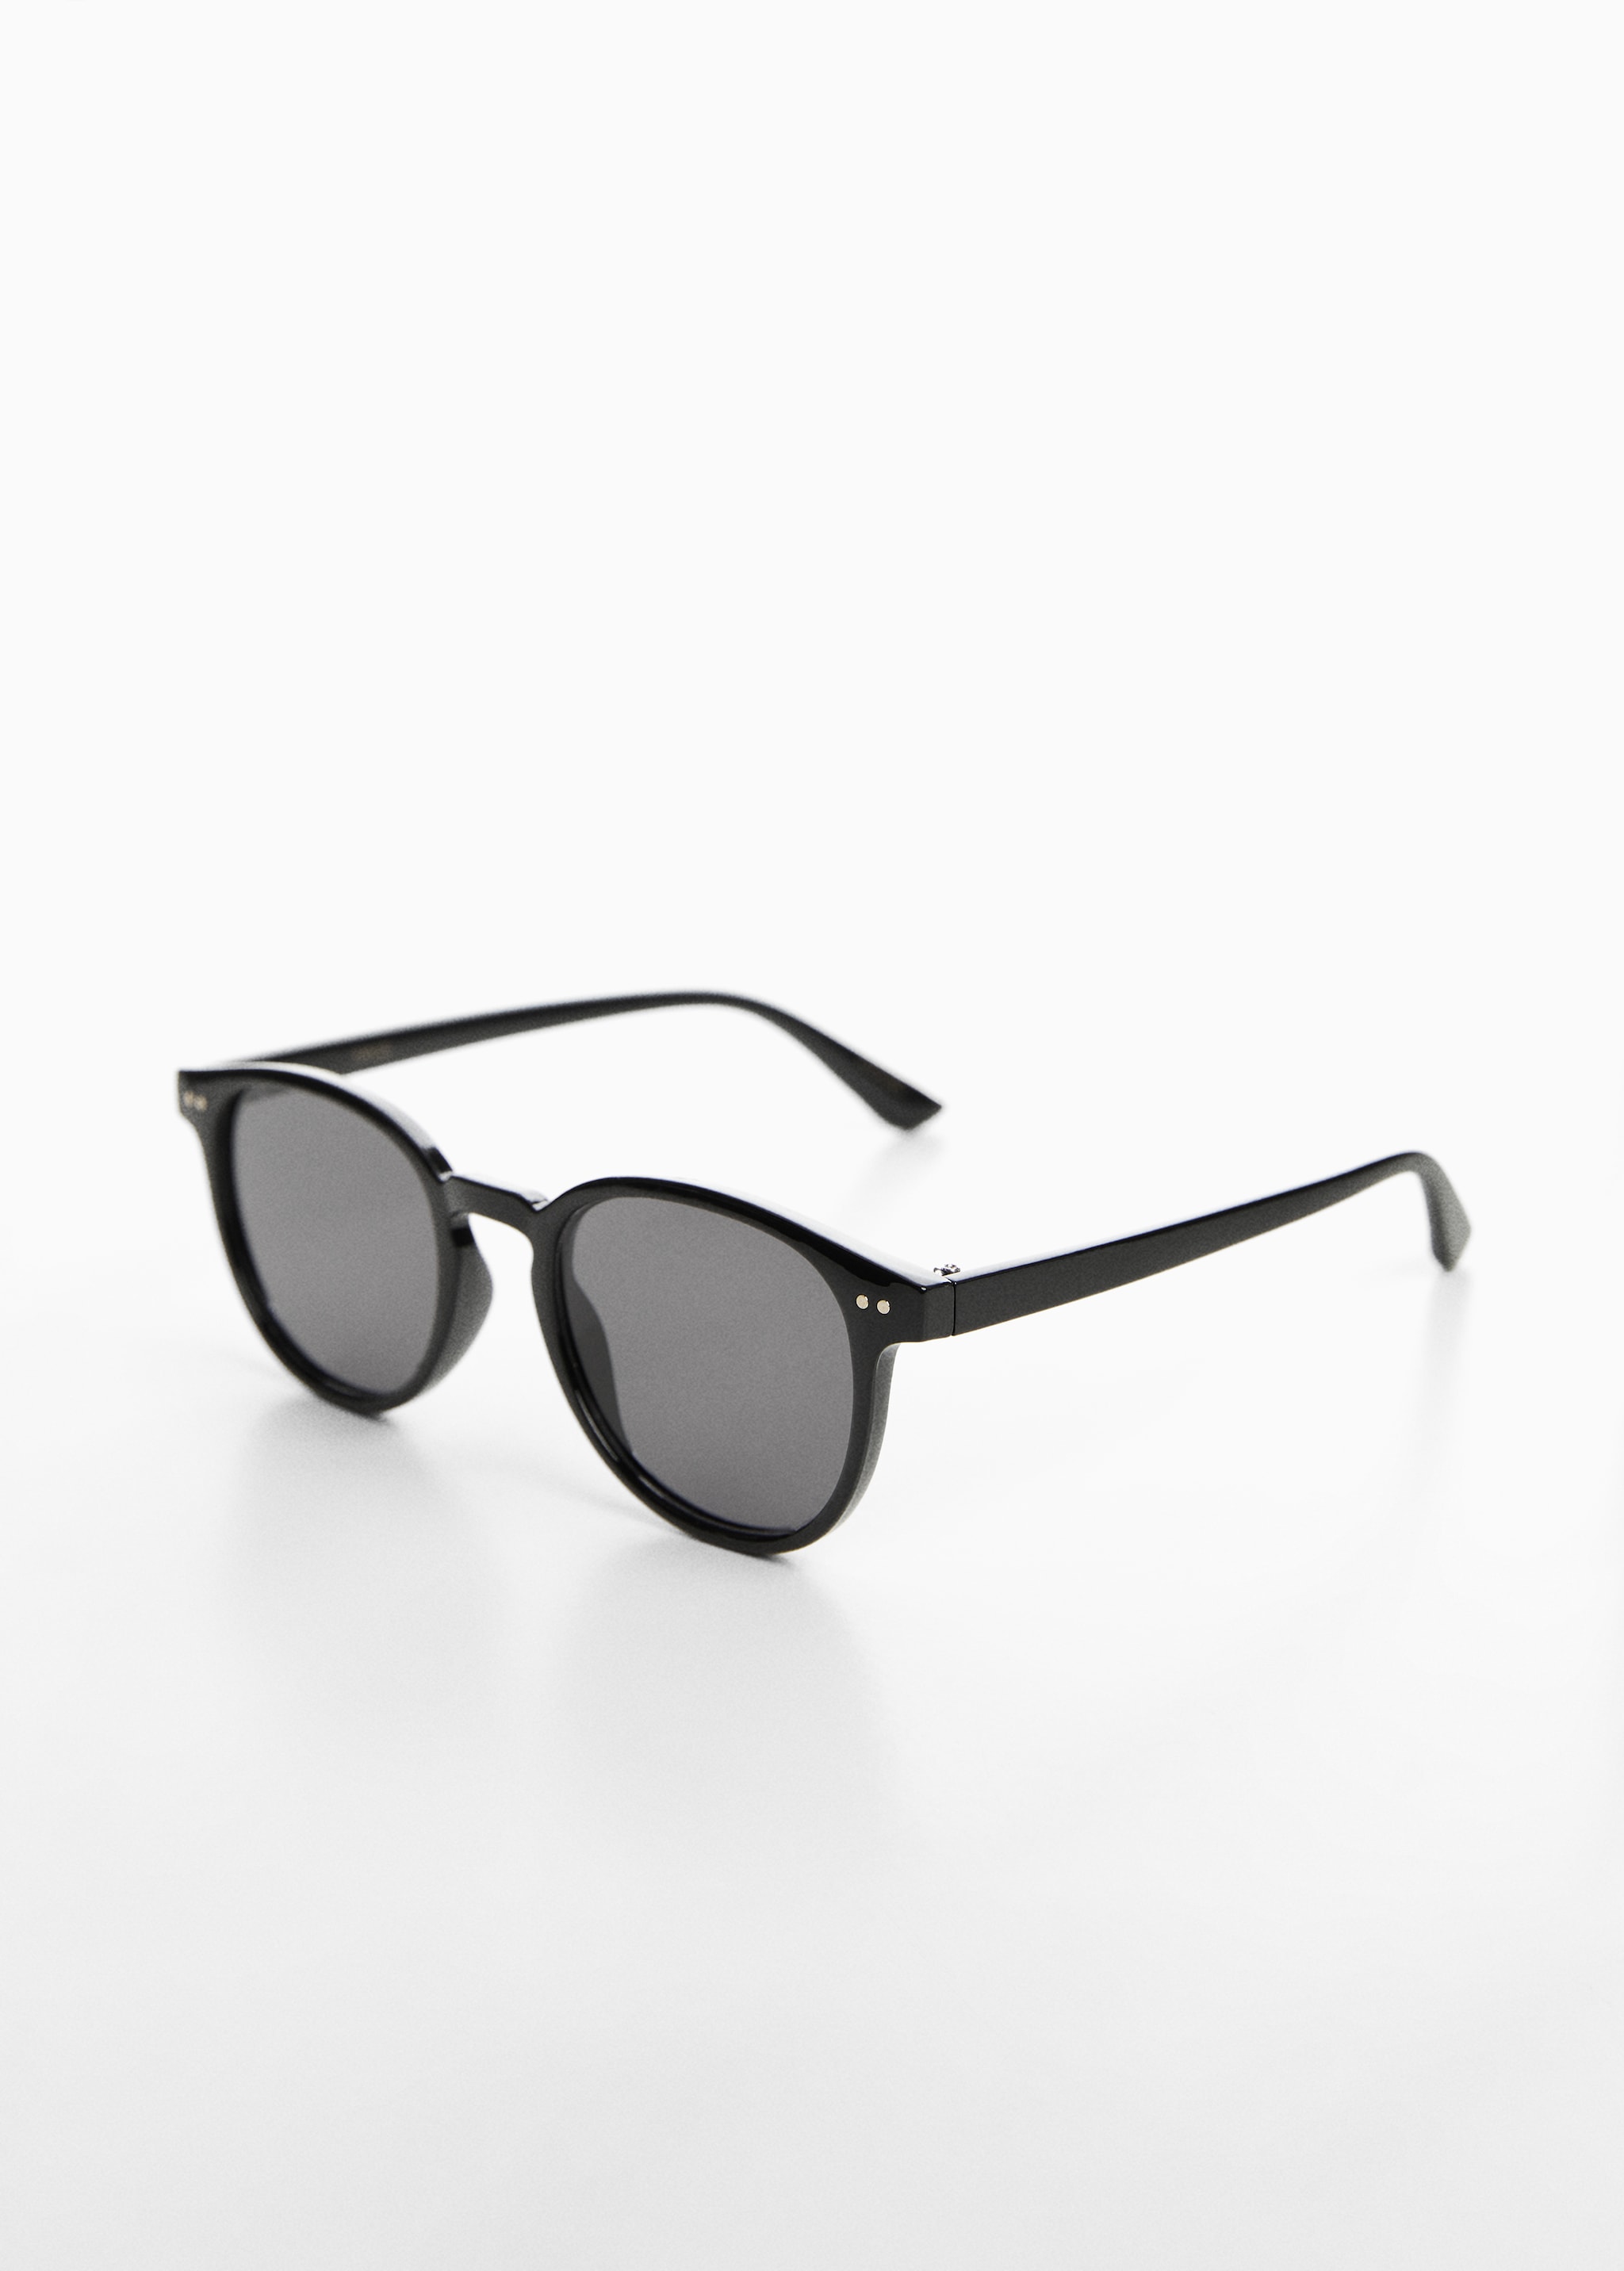 Polarised sunglasses - Medium plane